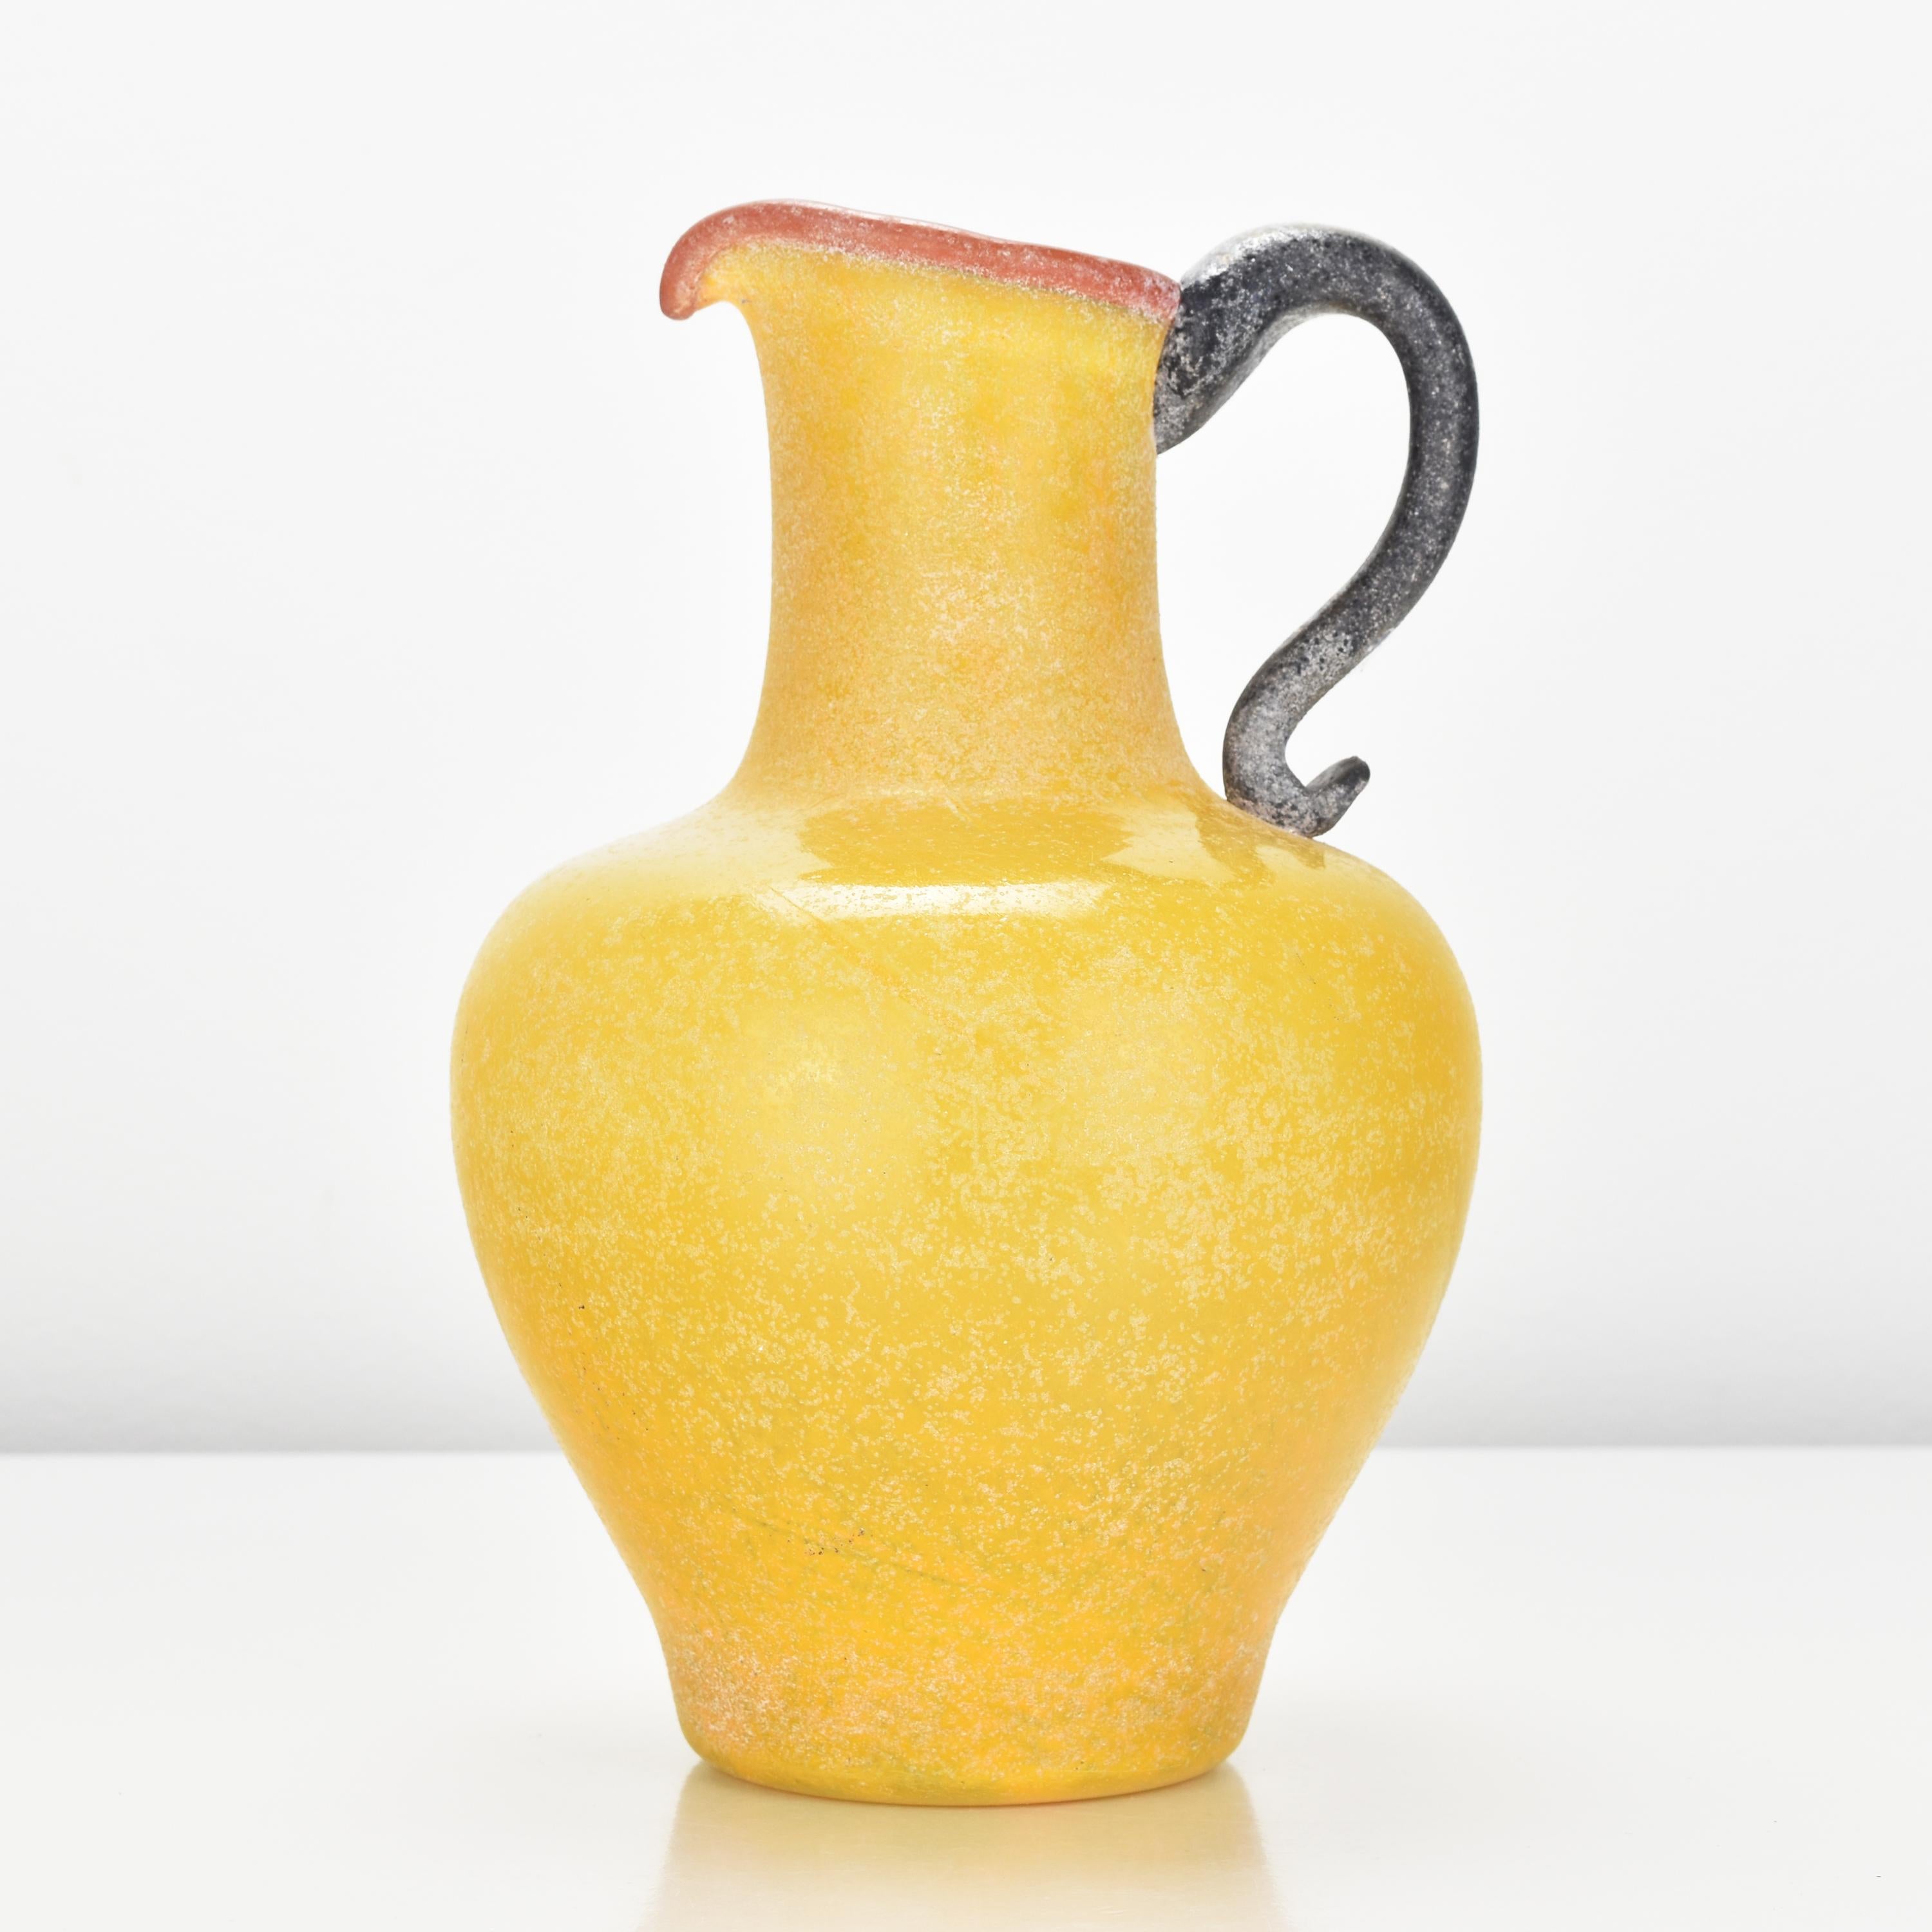 Kräftig gelbe Kunstglasvase mit rotem oberen Rand und schwarzem Henkel, wahrscheinlich von Archimede Seguso hergestellt.

Archimede Seguso (1909-1999) war ein bedeutender und sehr einflussreicher italienischer Glaskünstler und Glasbläsermeister von